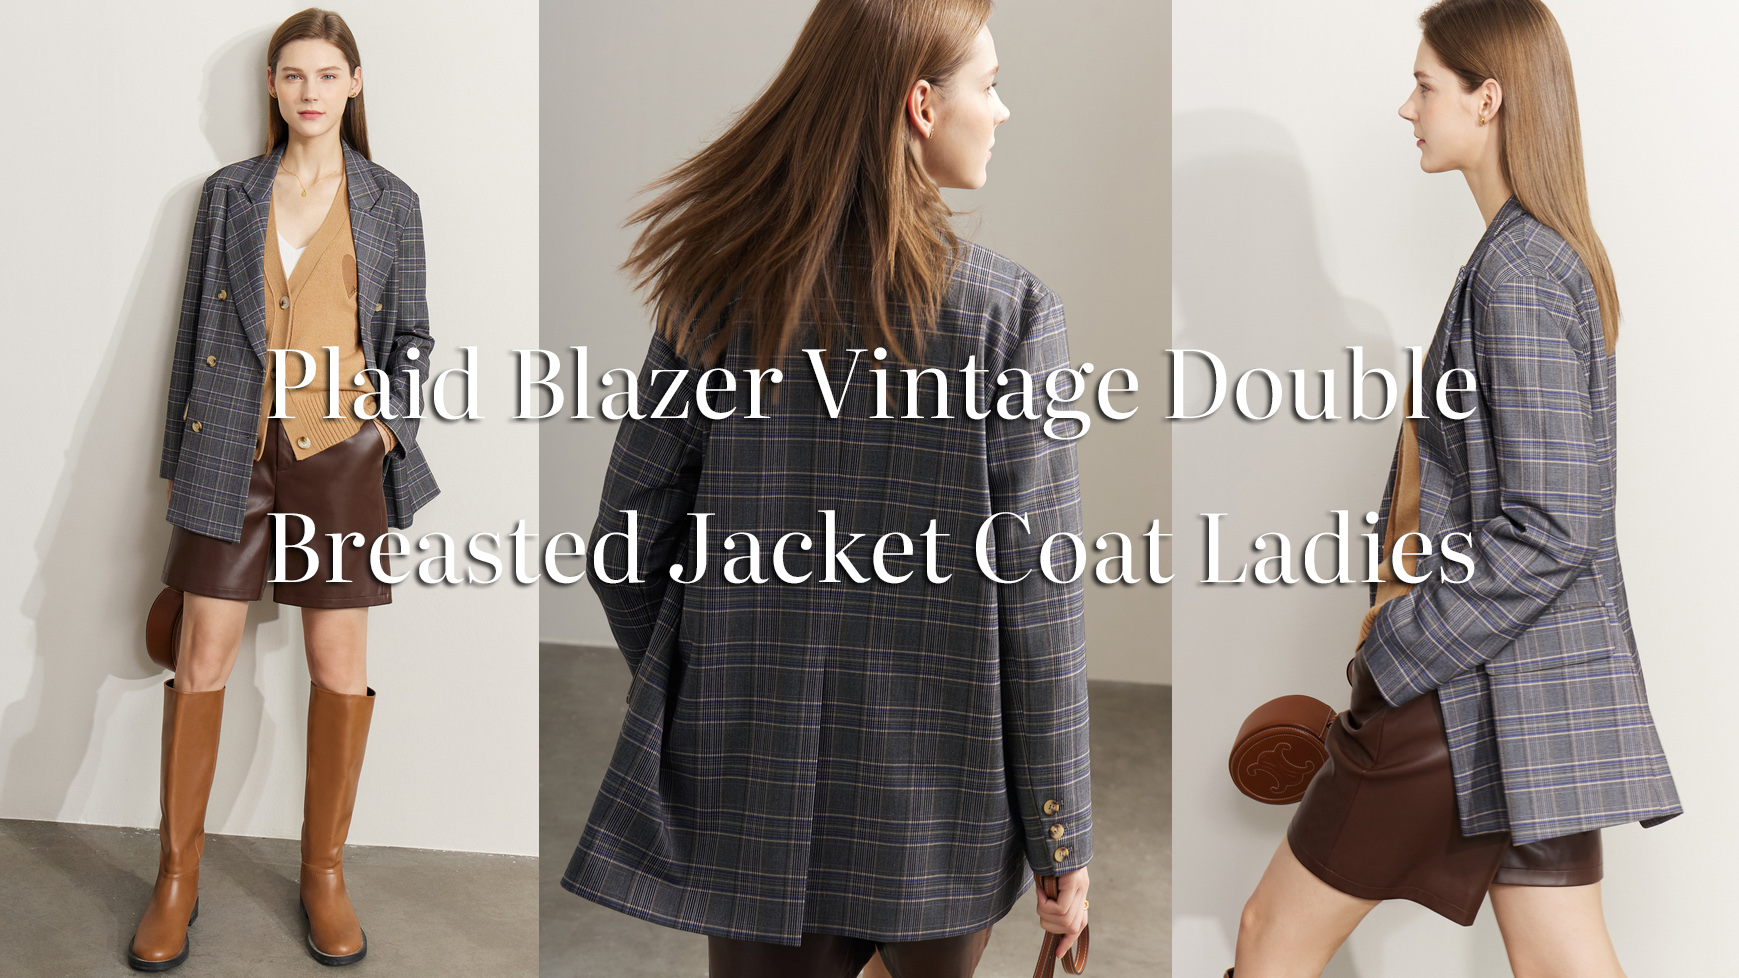 ຄຸນນະພາບ Plaid Blazer Vintage Double Breasted Jacket Coat Ladies Manufacturer |Auchalink